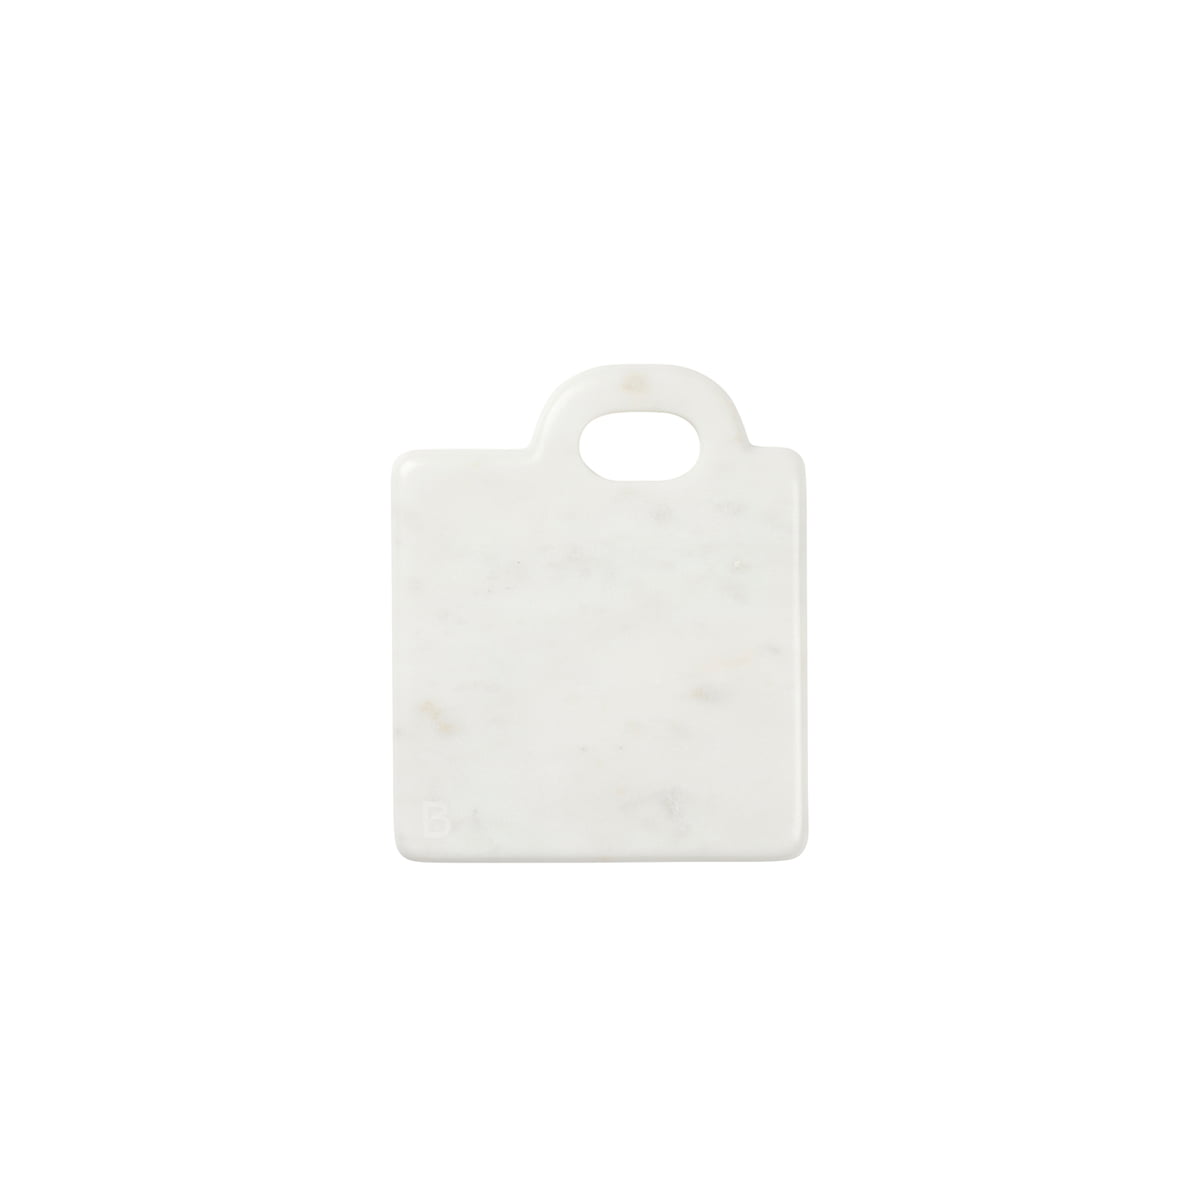 broste copenhagen - olina planche à découper 14 x 17 cm, marbre blanc